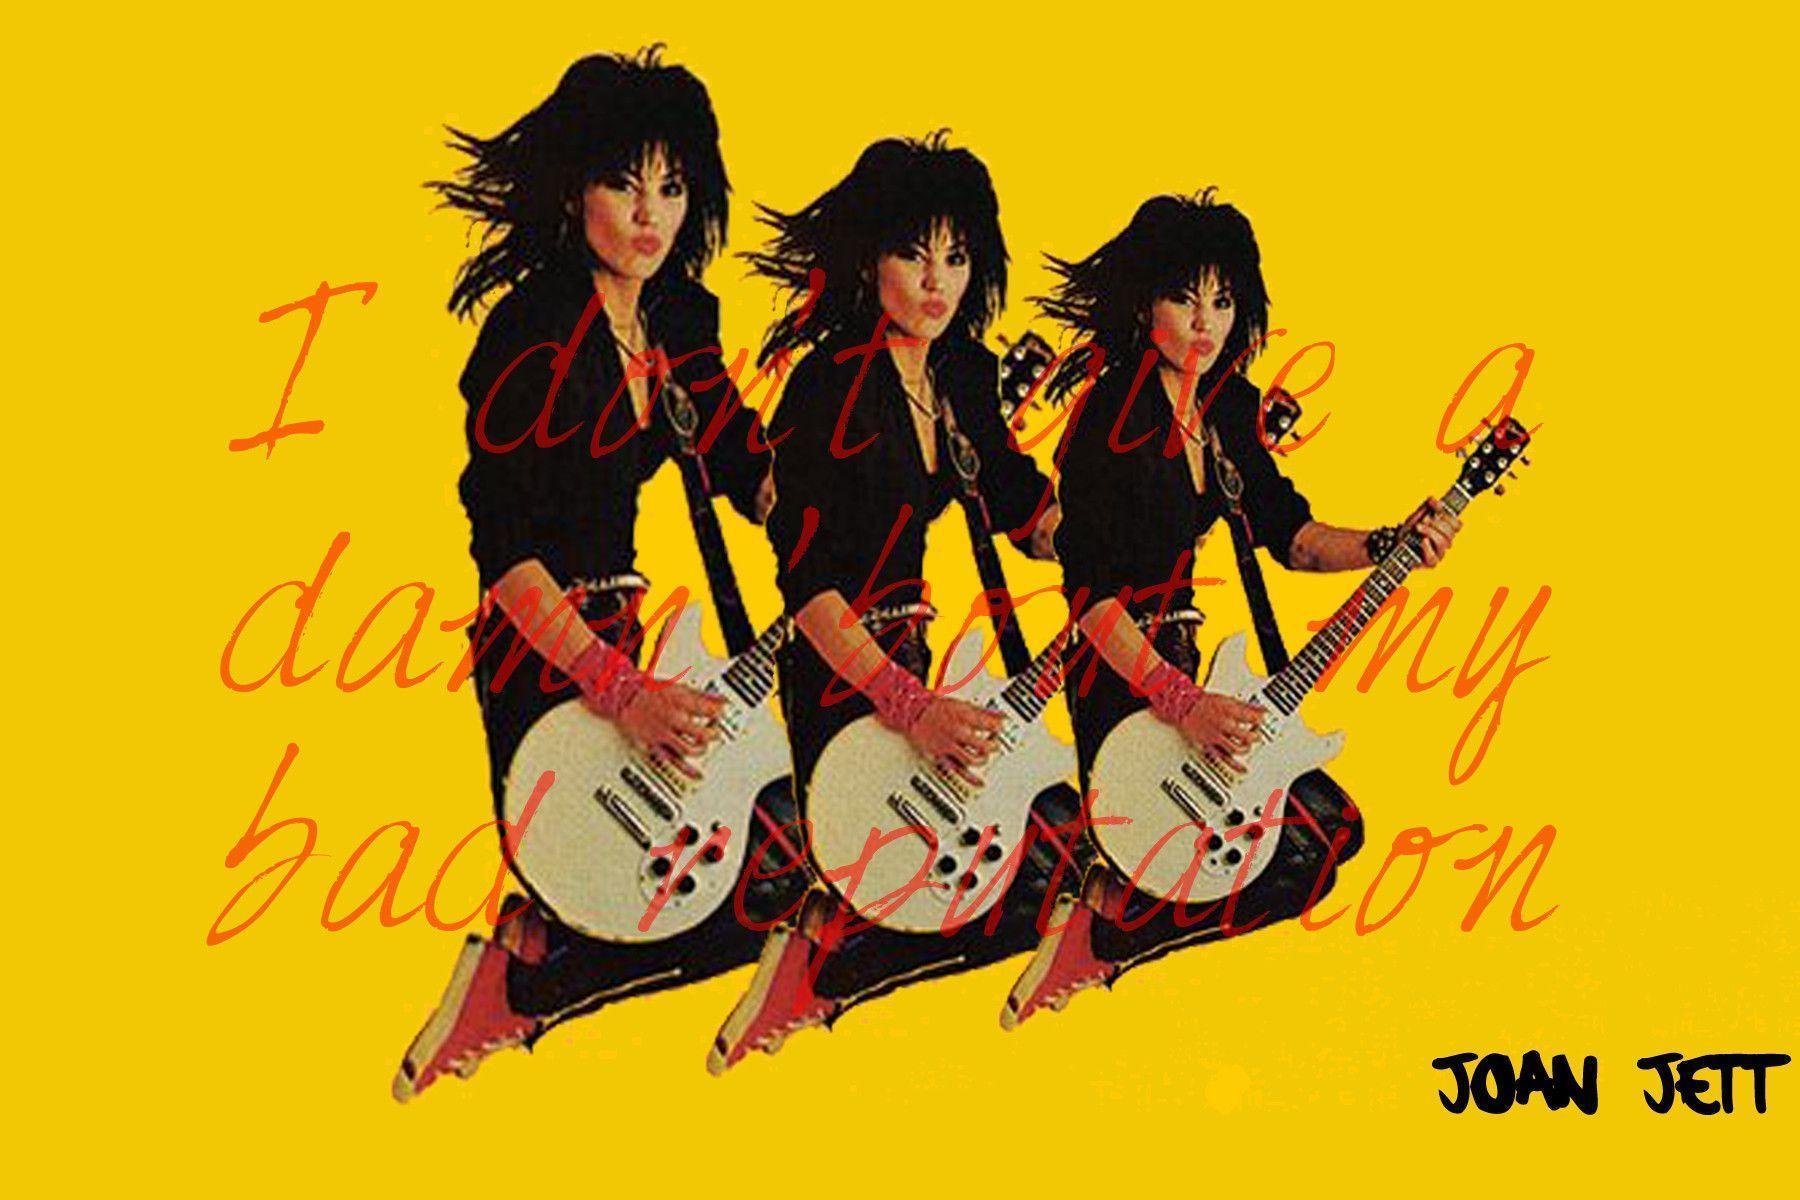 Joan Jett Wallpapers